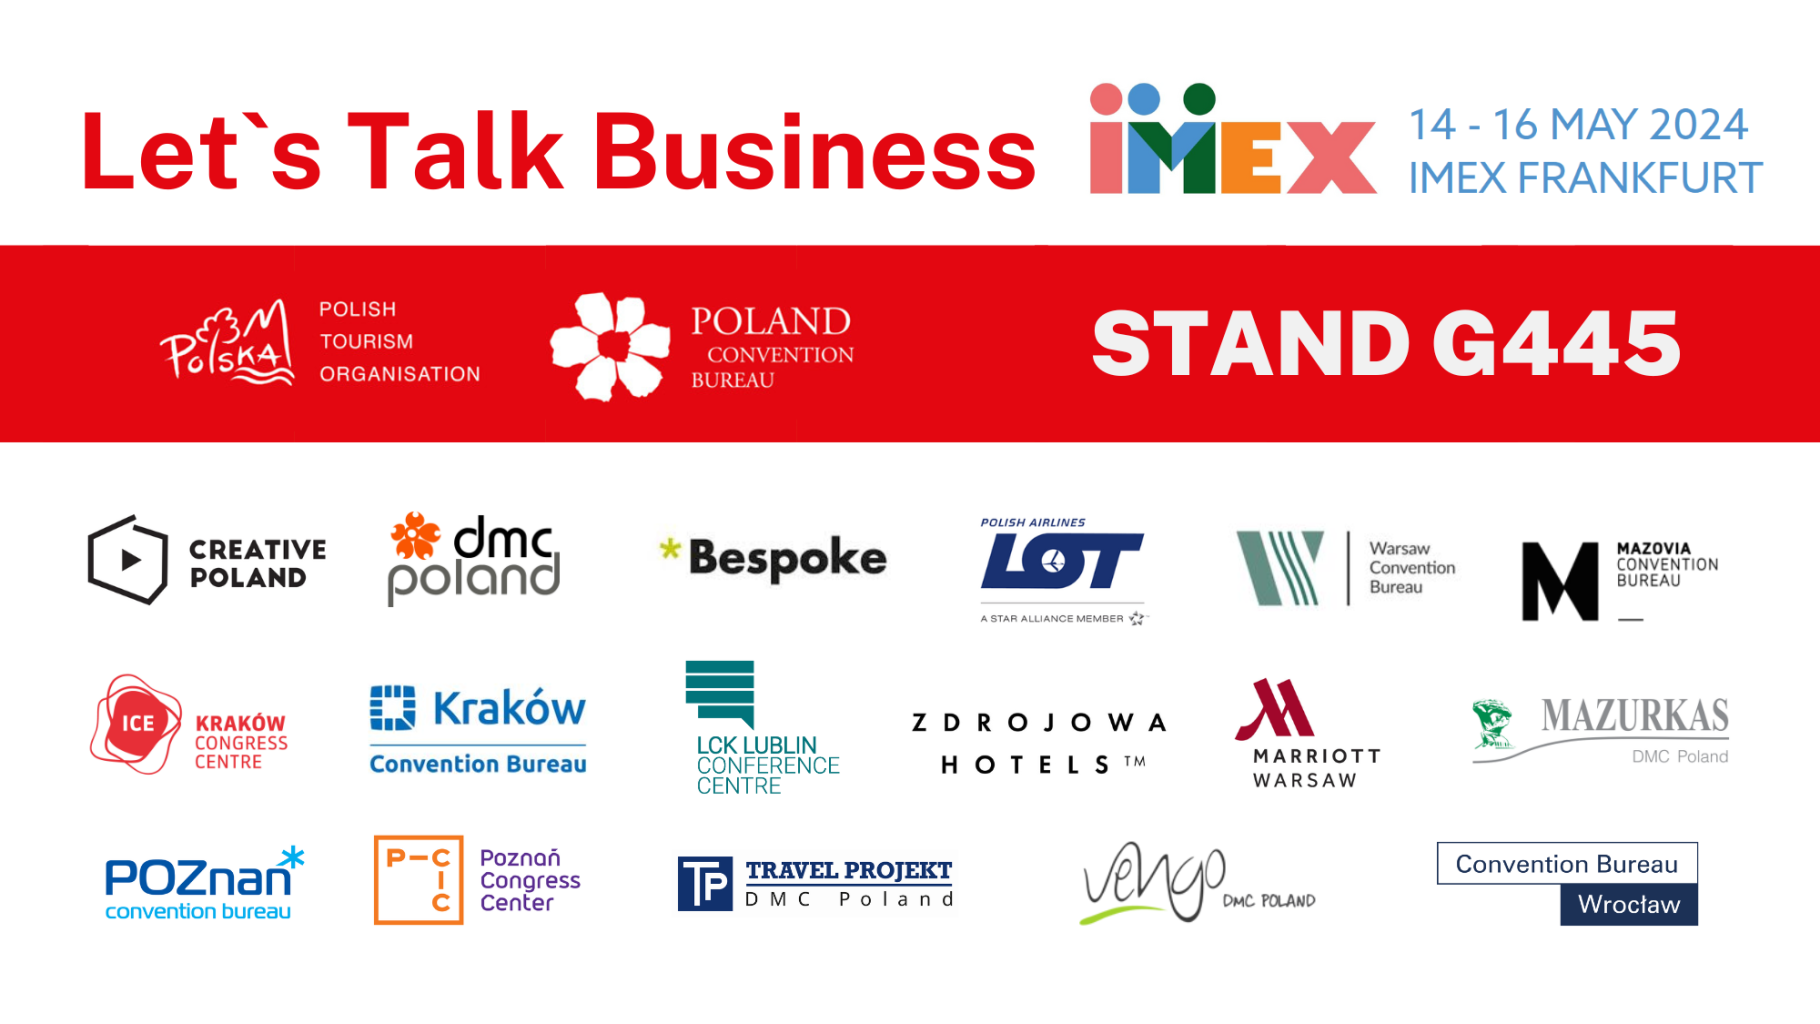 IMEX-FRANKFURT-2024-targi-turystyki-biznesowej-poland-convention-bureau-polska-organizacja-turystyczne.png